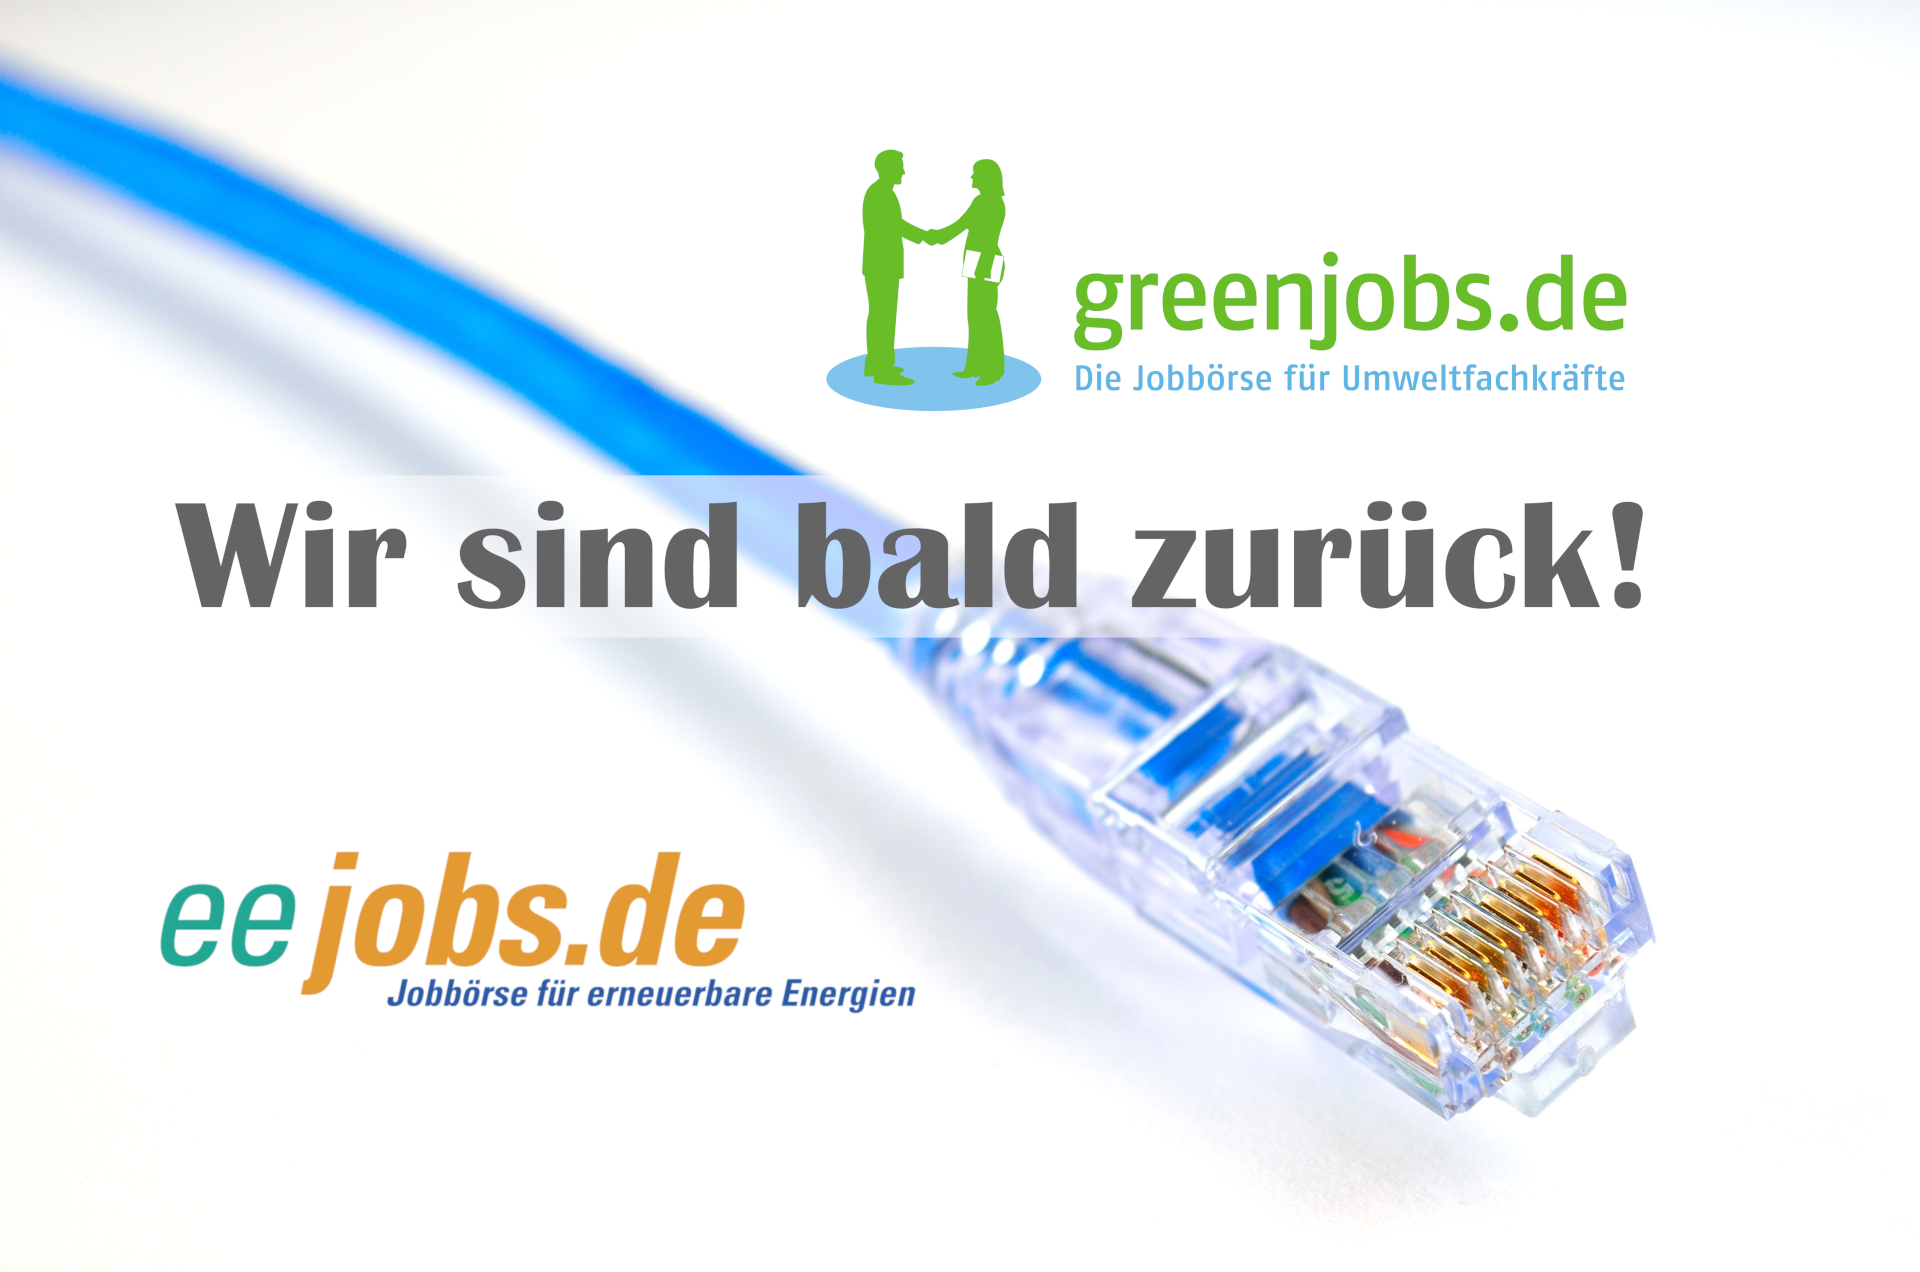 Logos von eejobs.de und greenjobs.de zusammen mit einem Netzwerkkabel. Hinweis: Wir sind bald zurück!